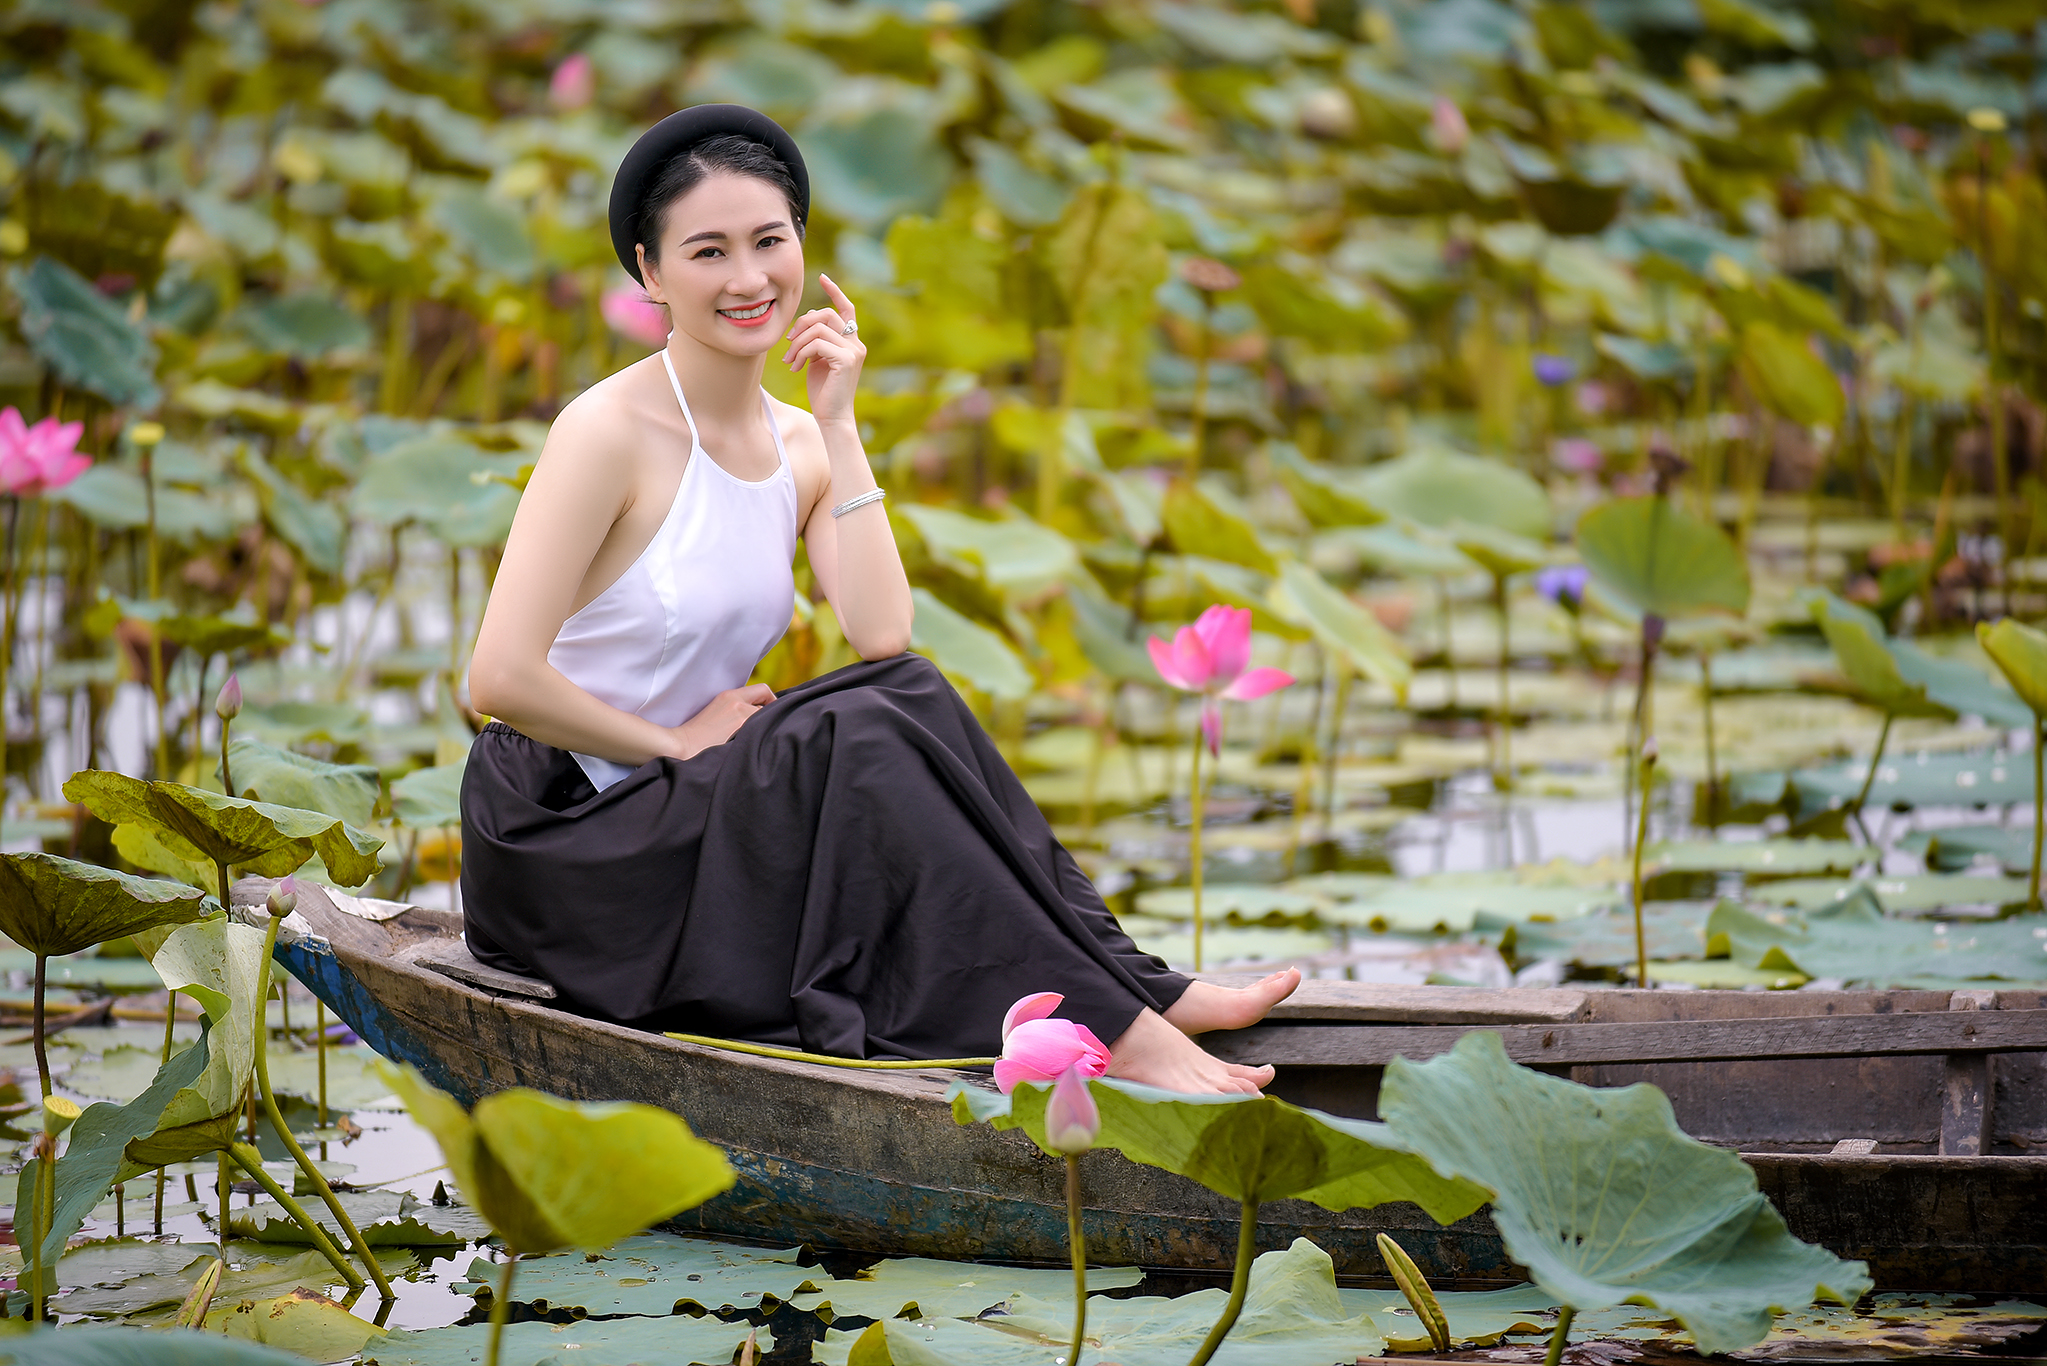 Áo yếm hoa sen là một trong những trang phục truyền thống nổi tiếng của Việt Nam. Với họa tiết hoa sen tinh tế, chiếc áo yếm này sẽ khiến bạn trông rất duyên dáng và thanh lịch. Bạn có thể kết hợp áo yếm hoa sen với các phụ kiện để có một set đồ trang trọng và ấn tượng.